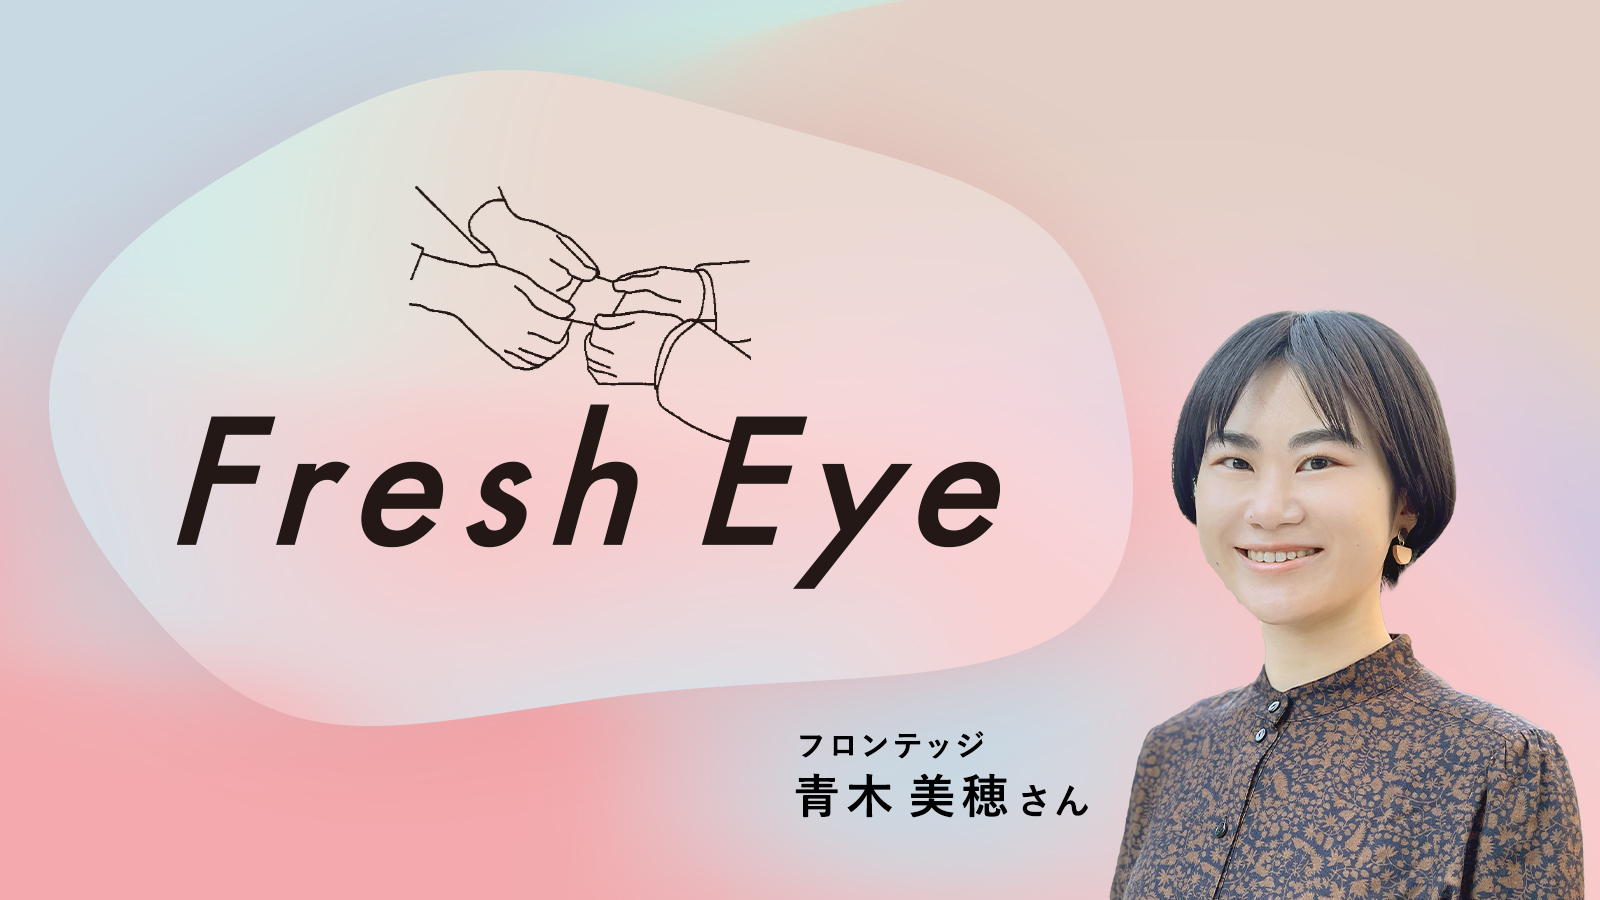 広告に問いはあるか。／フロンテッジ青木美穂さん〈Fresh Eye〉